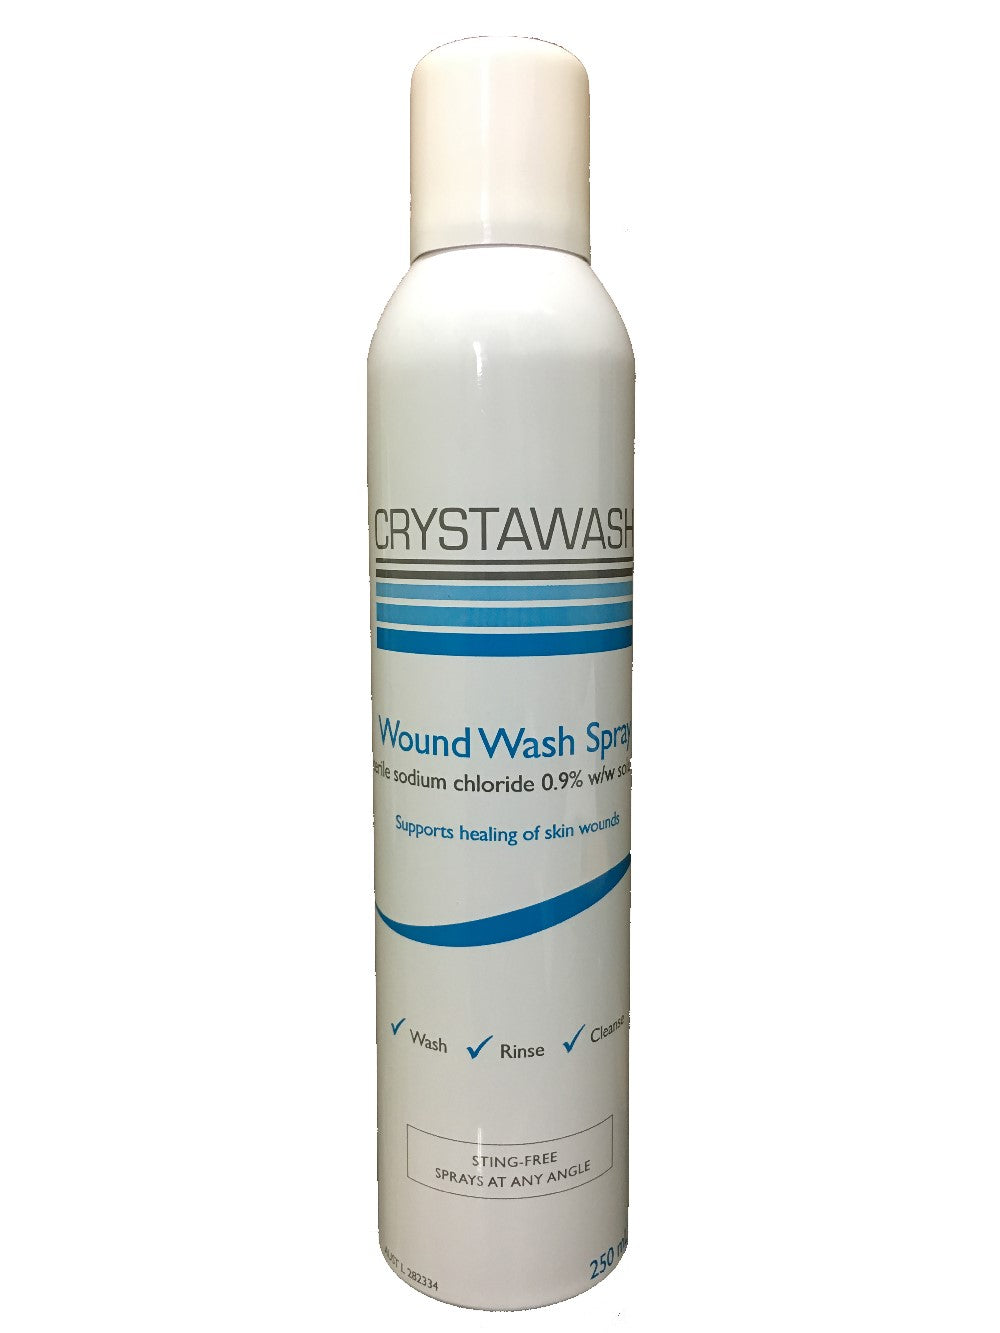 Crystawash Wound Wash Spray, 250mL